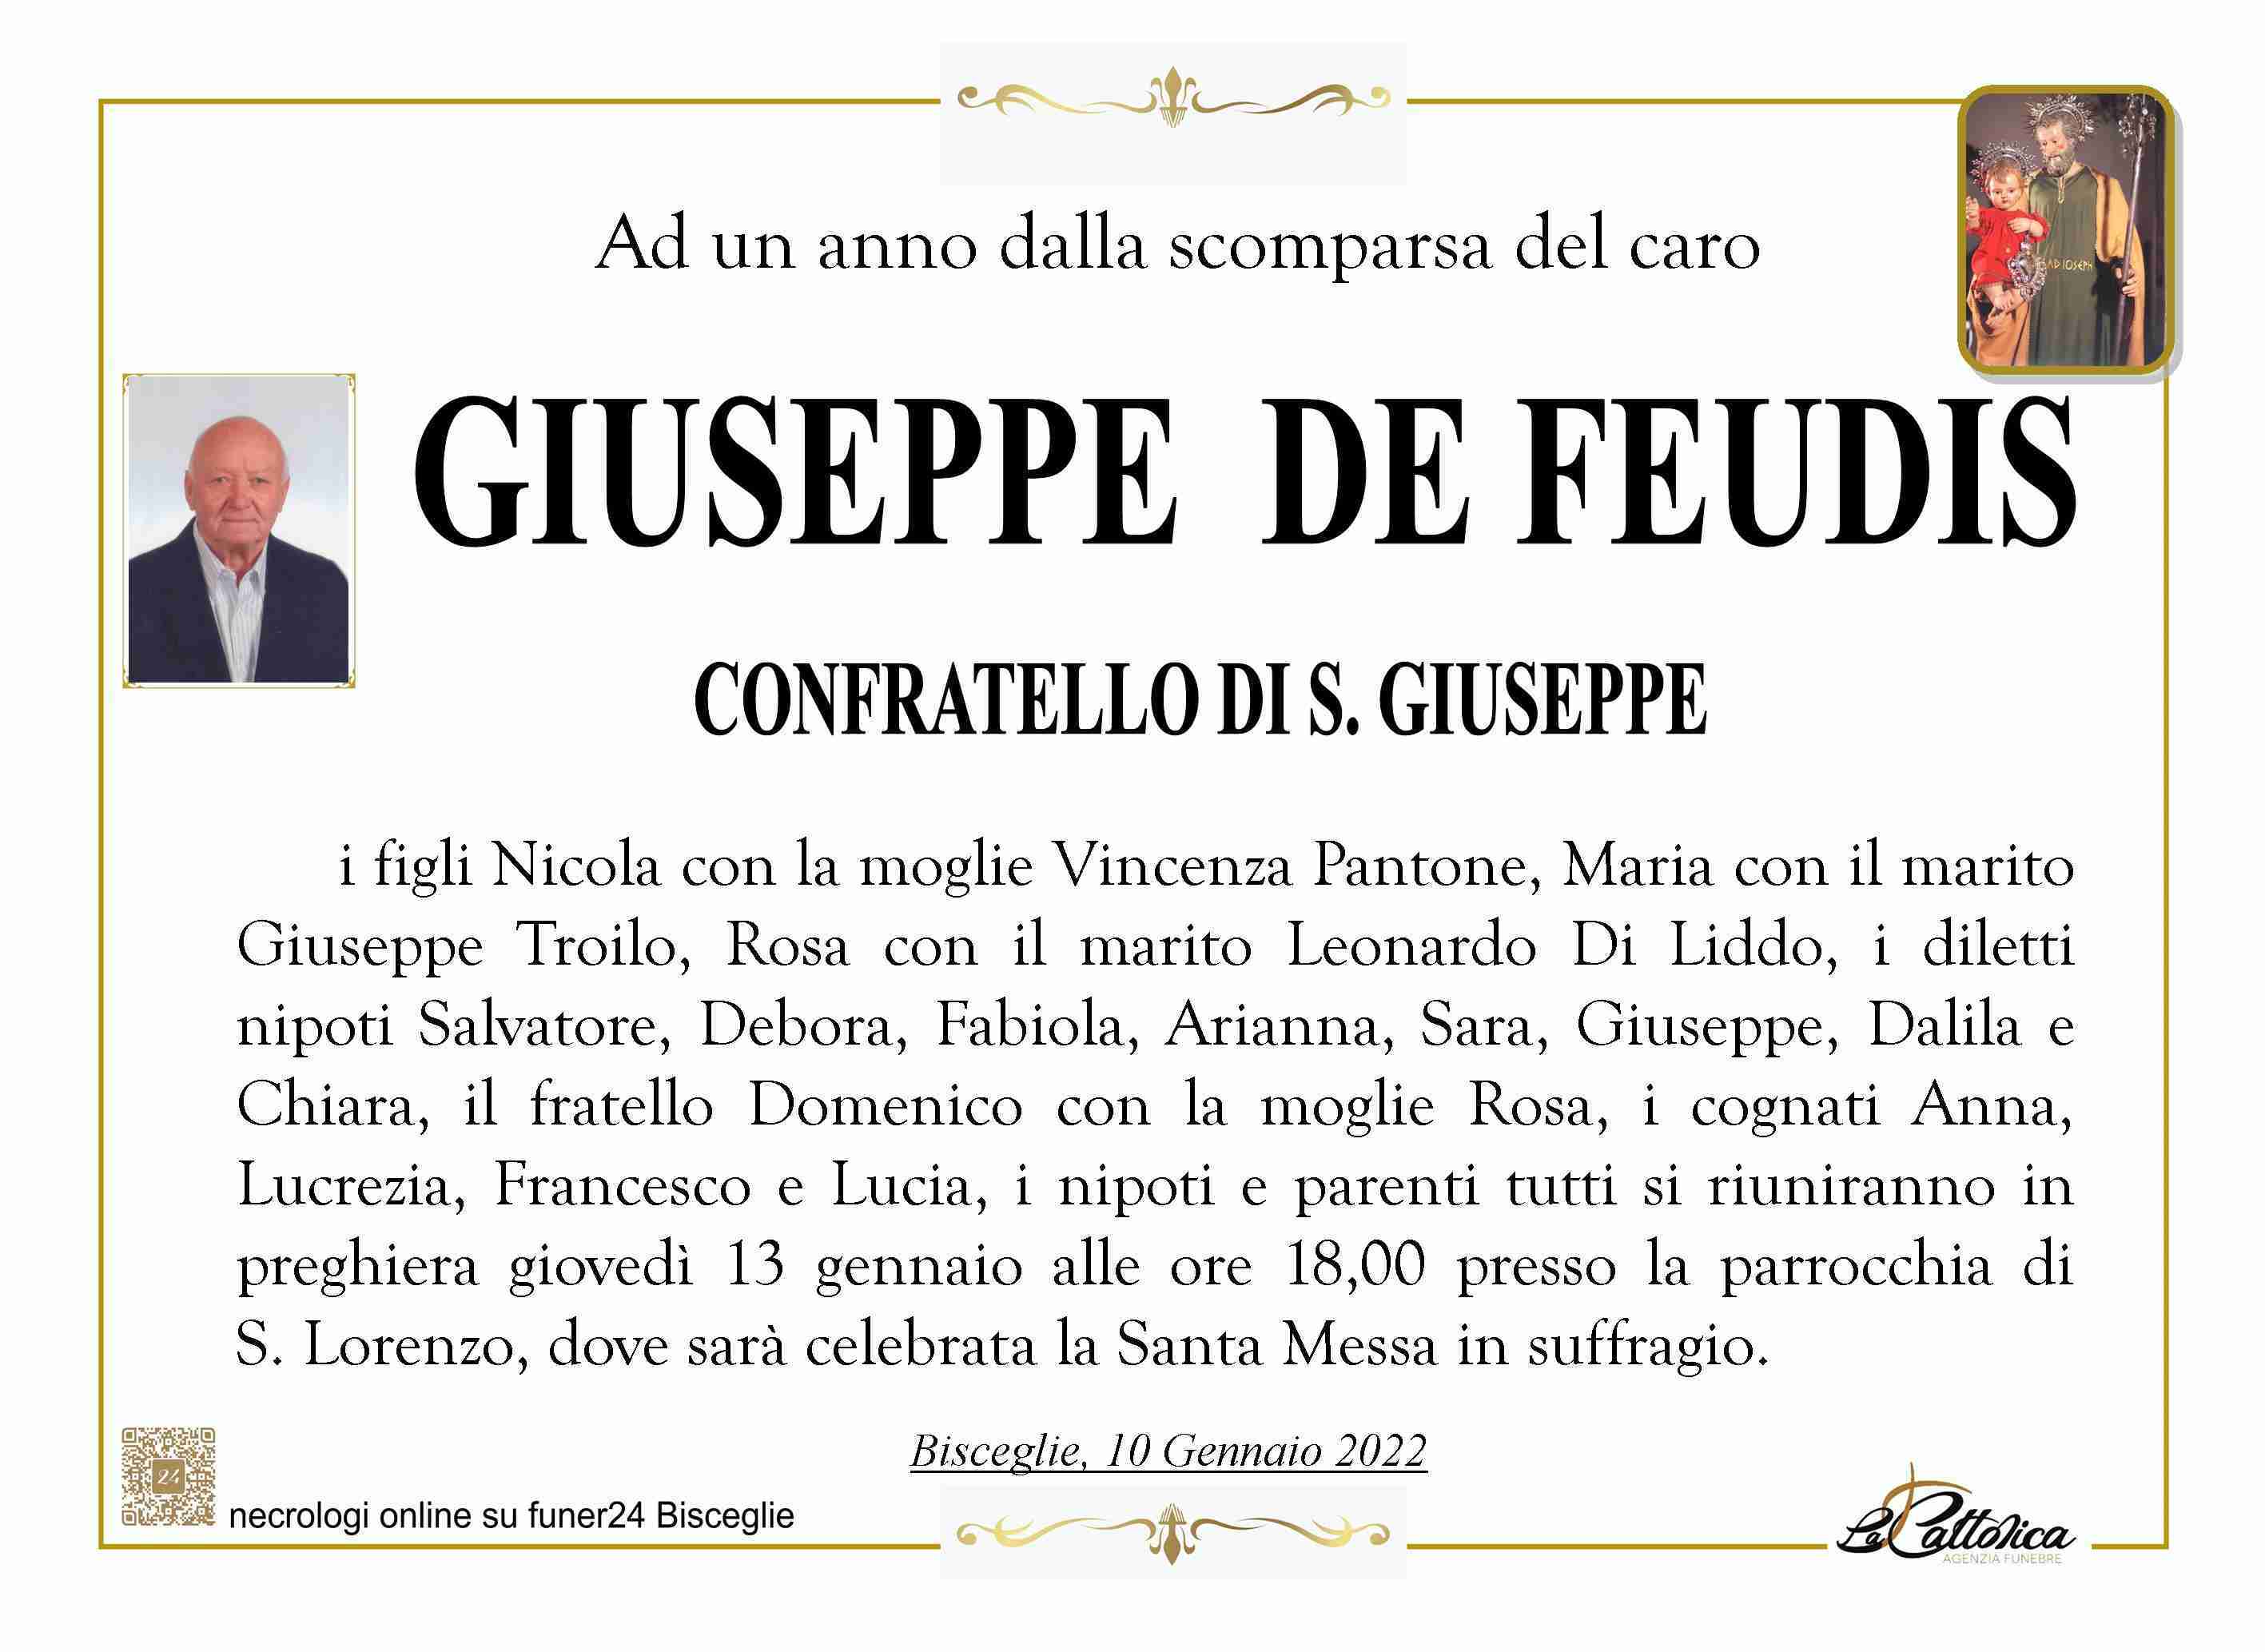 Giuseppe De Feudis